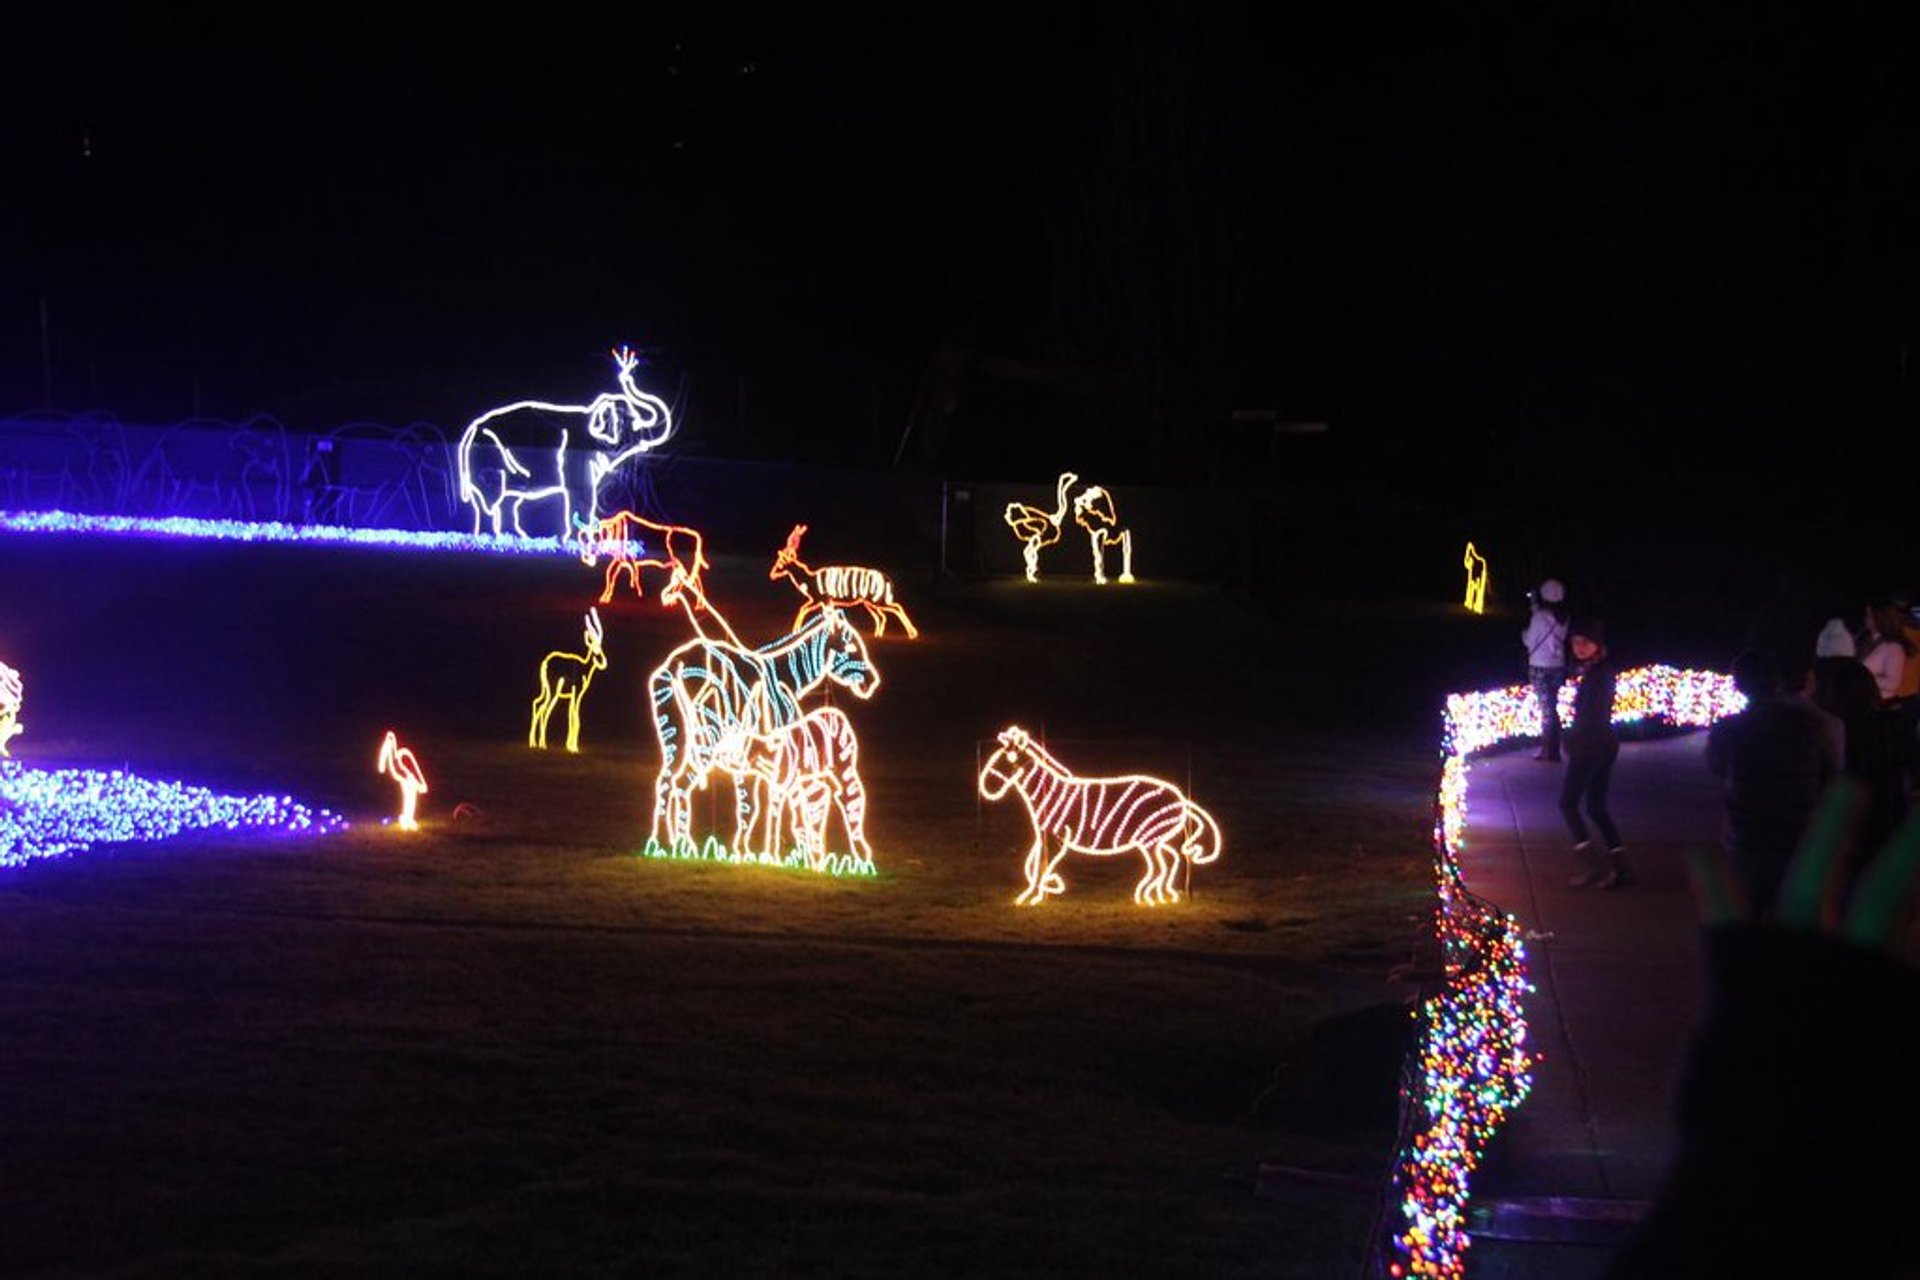 Oregon's Christmas Light Displays